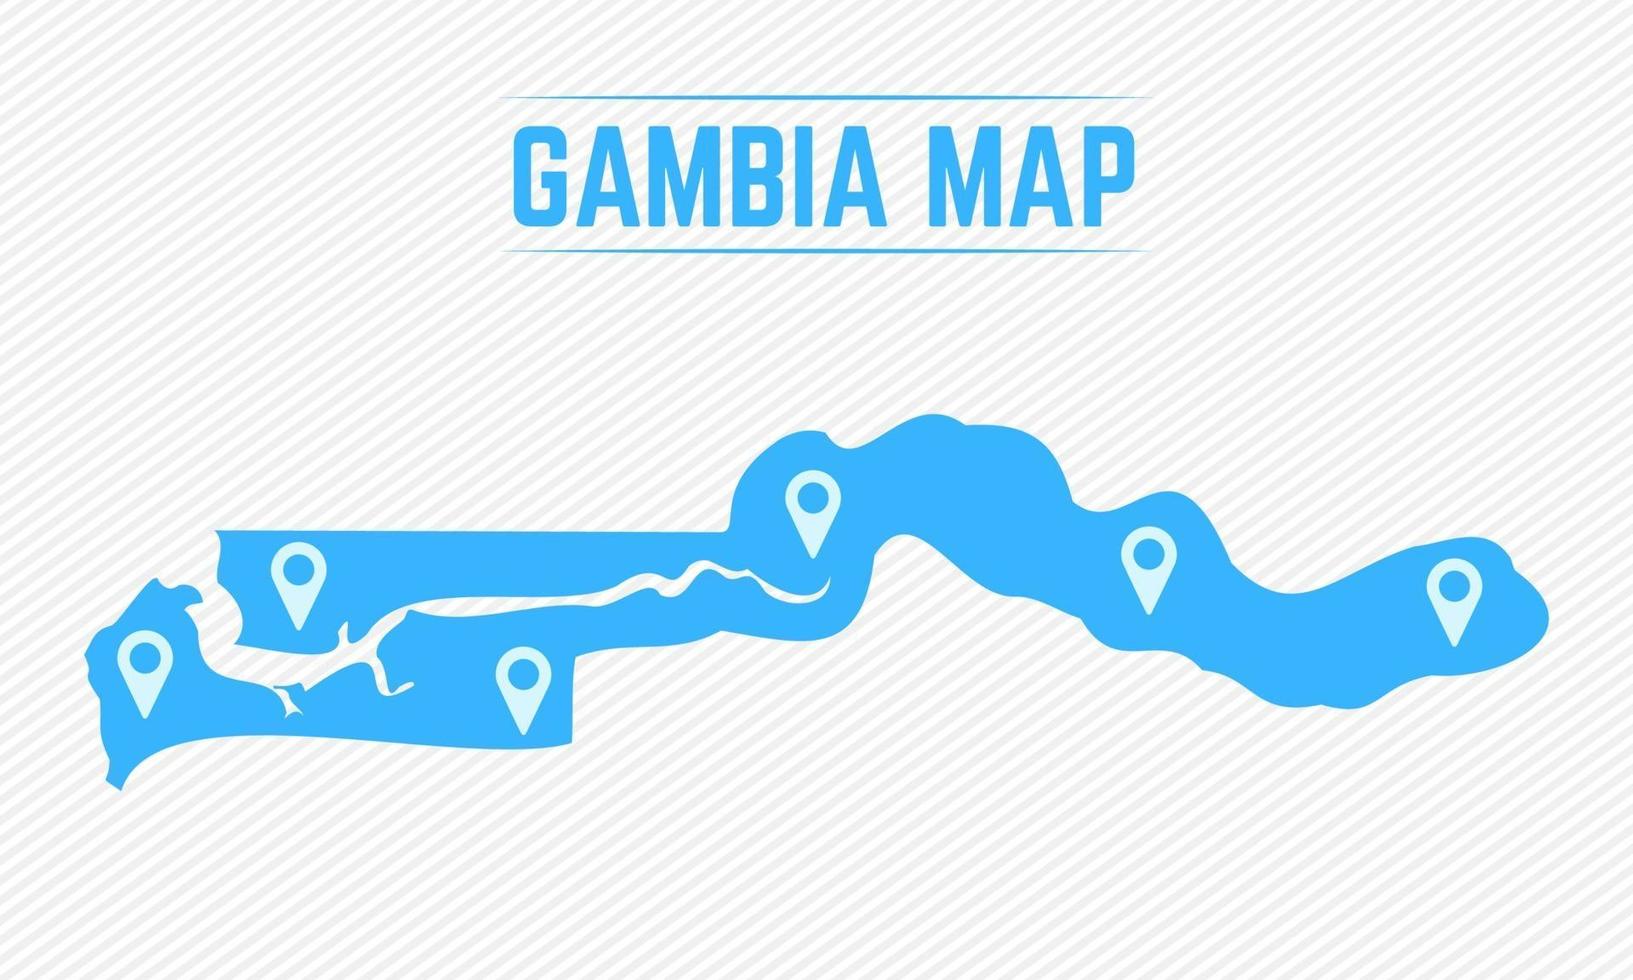 mapa simple de gambia con iconos de mapa vector